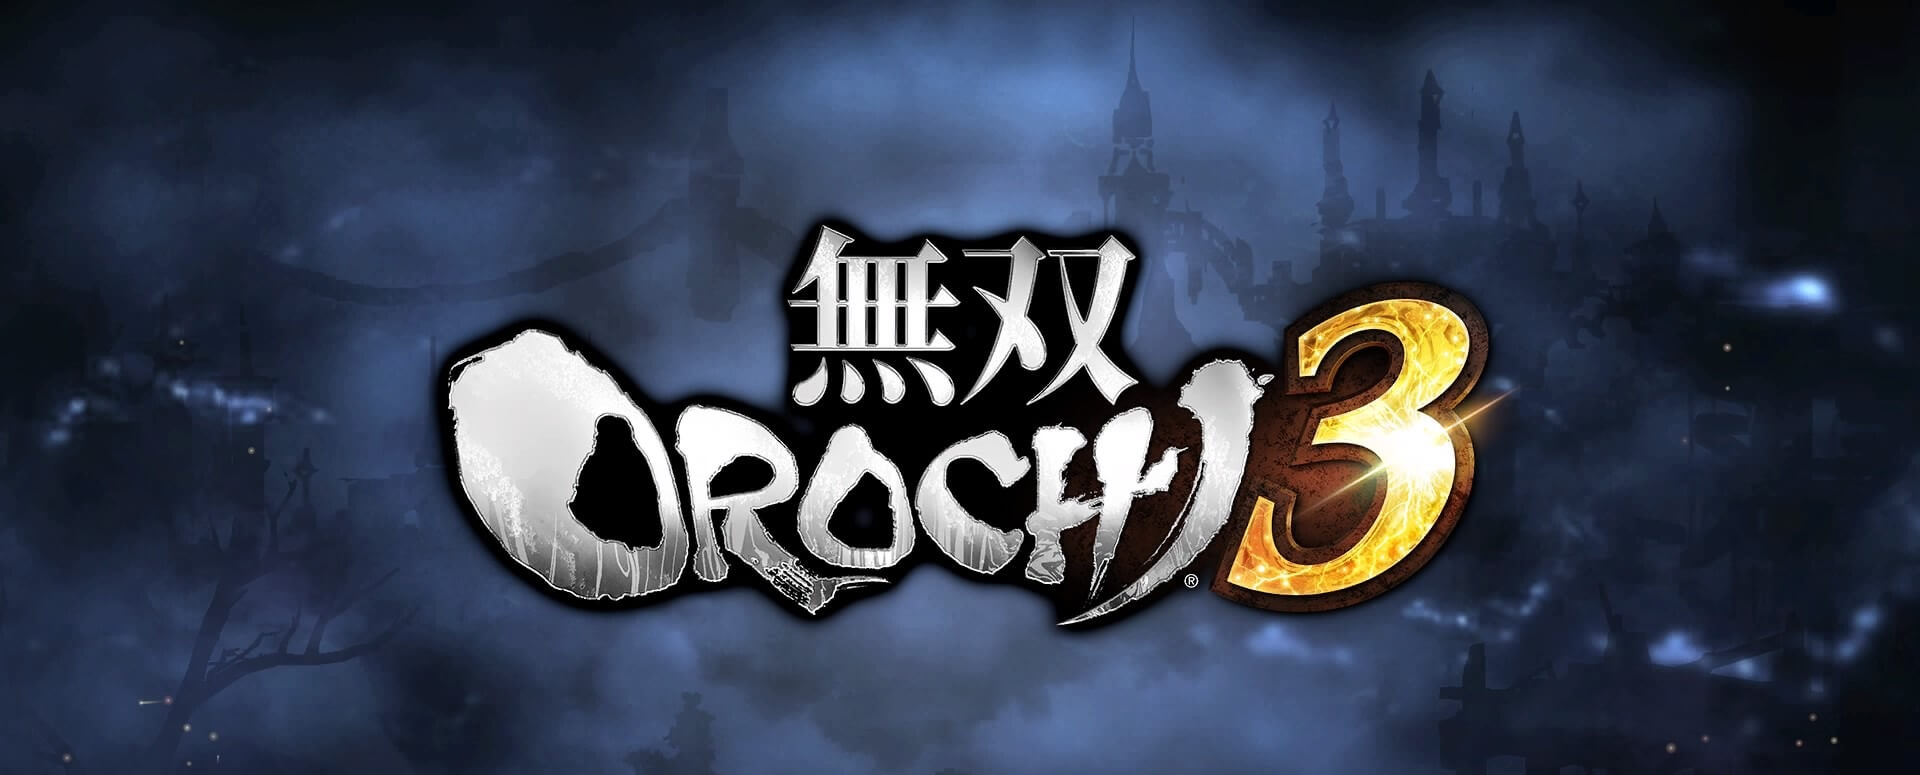 【無双OROCHI3】撃滅の神術・撃滅の必殺技・撃滅の秘技のトロフィー取得方法